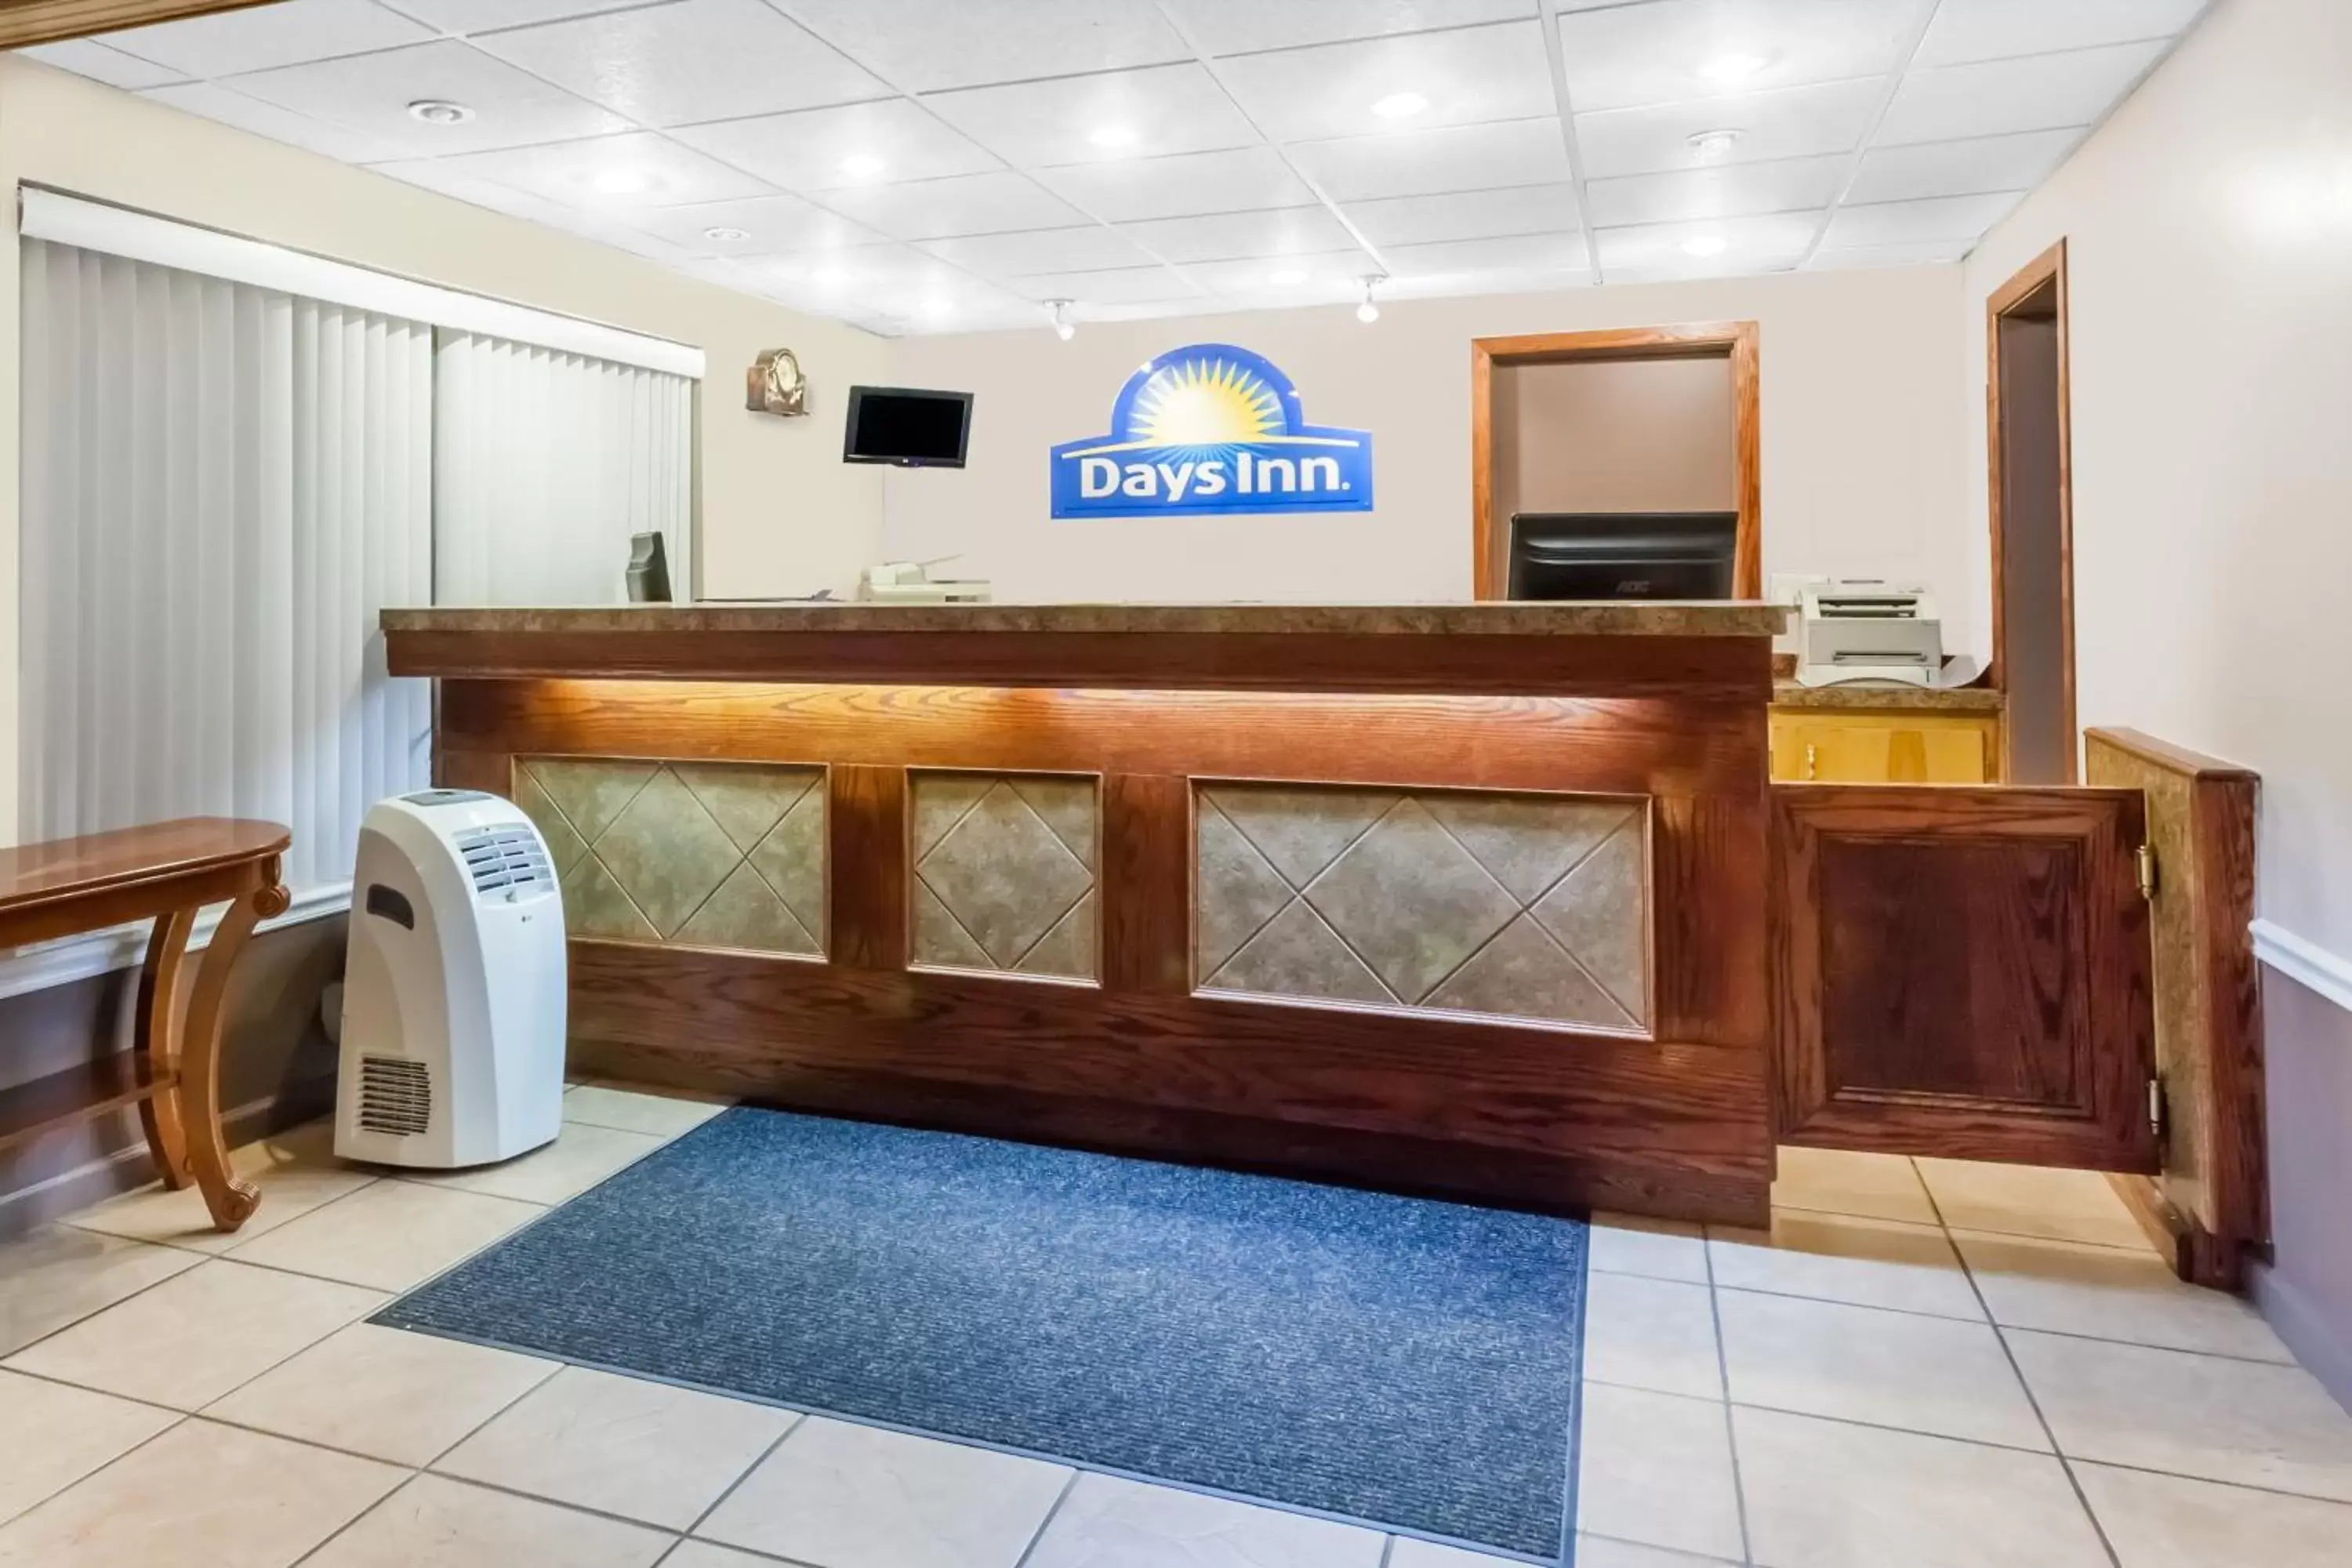 Lobby or reception, Lobby/Reception in Days Inn by Wyndham Tannersville